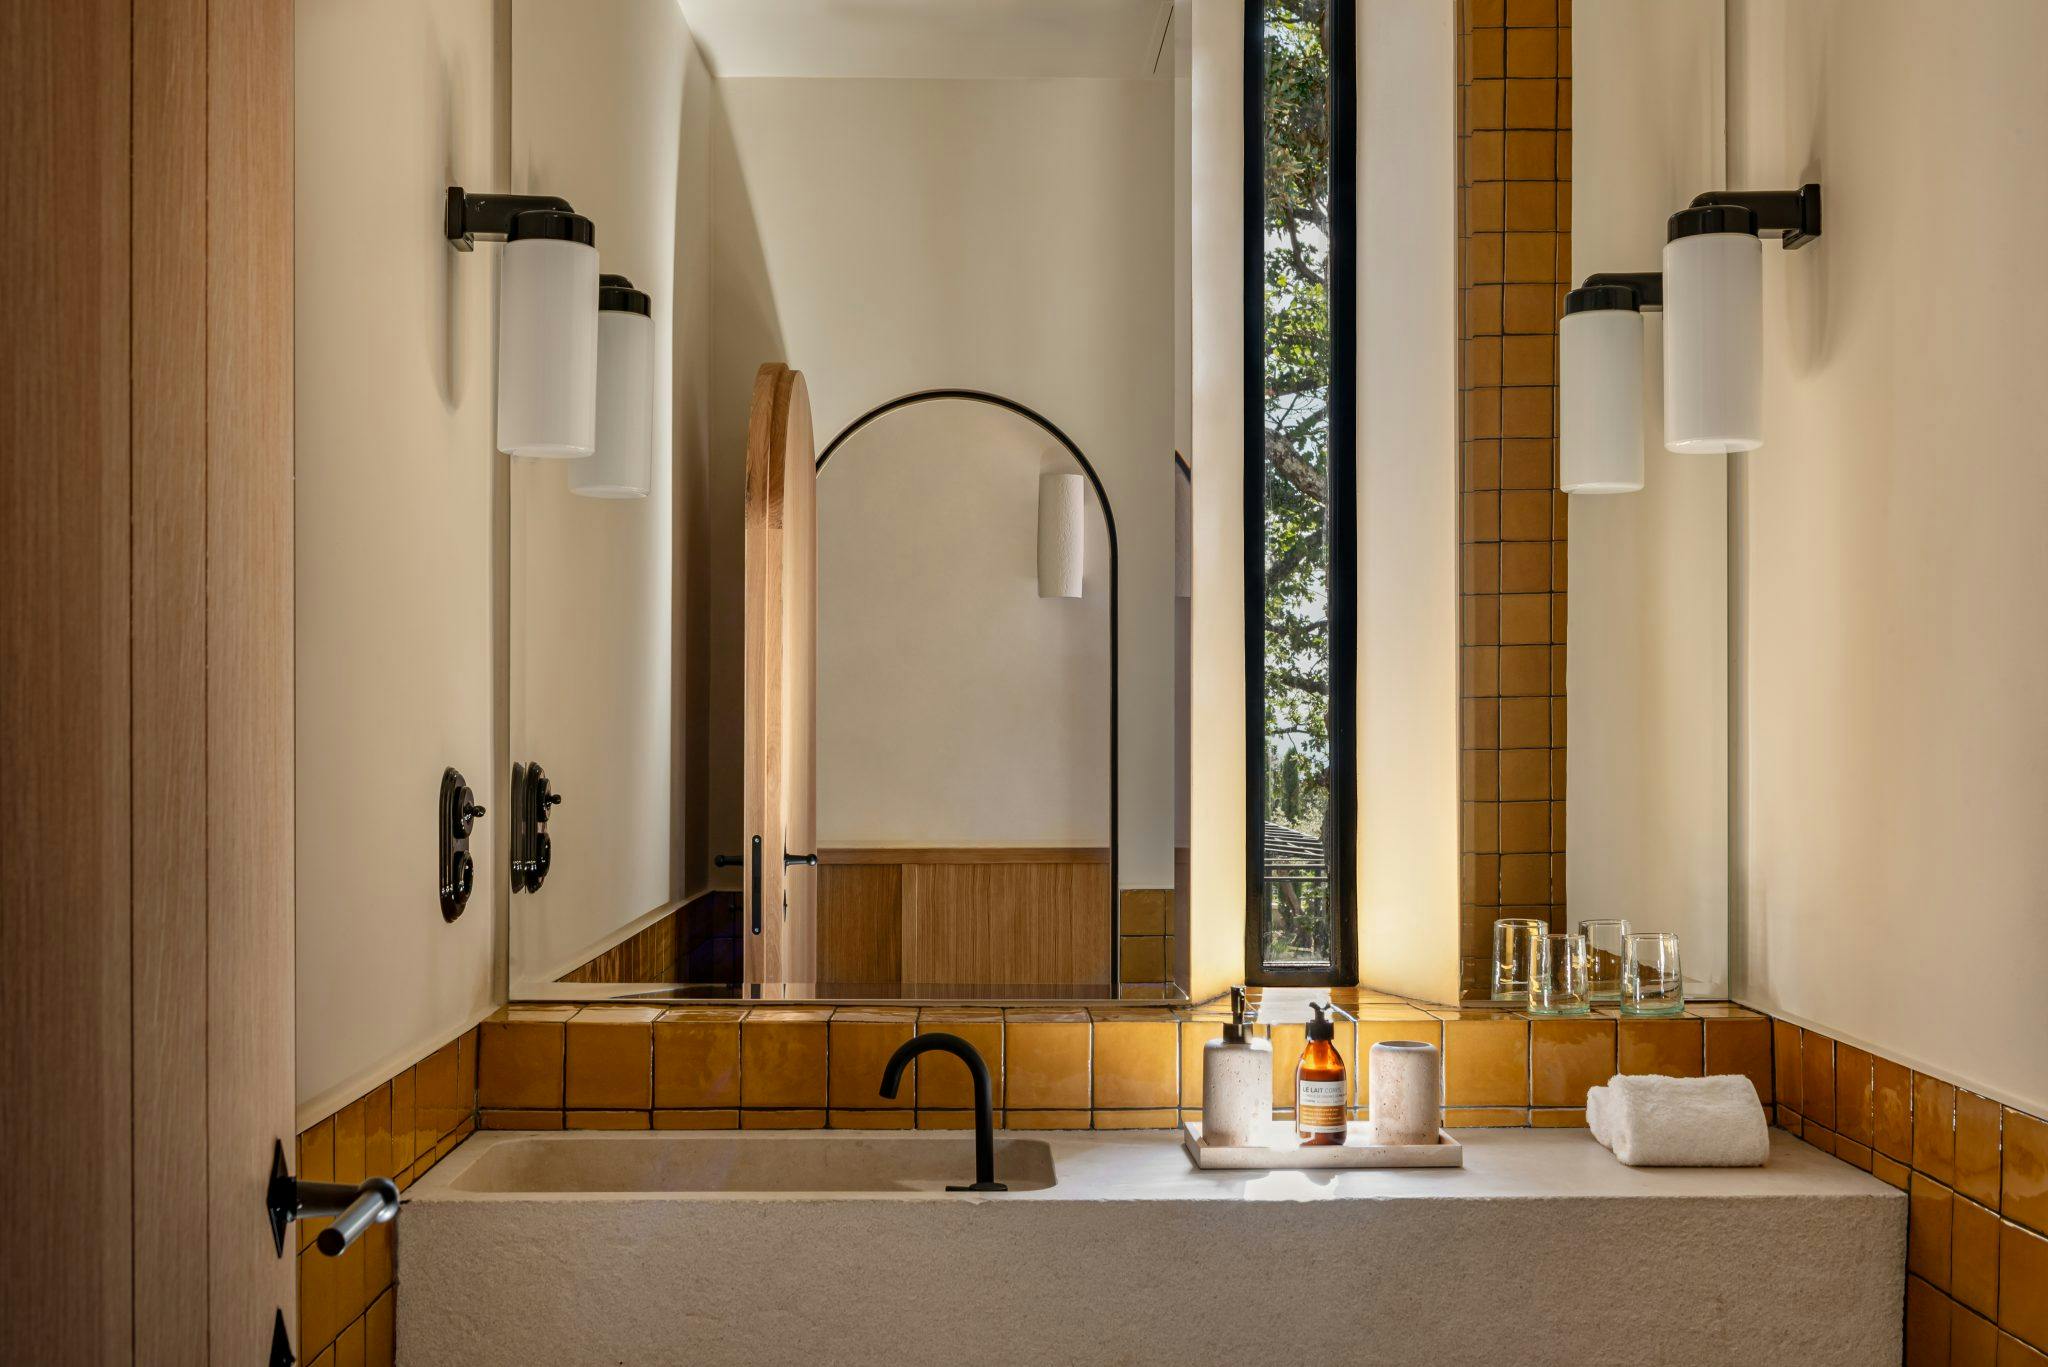 salle de bain en faïence jaune de style provençal aux Hauts de Gordes